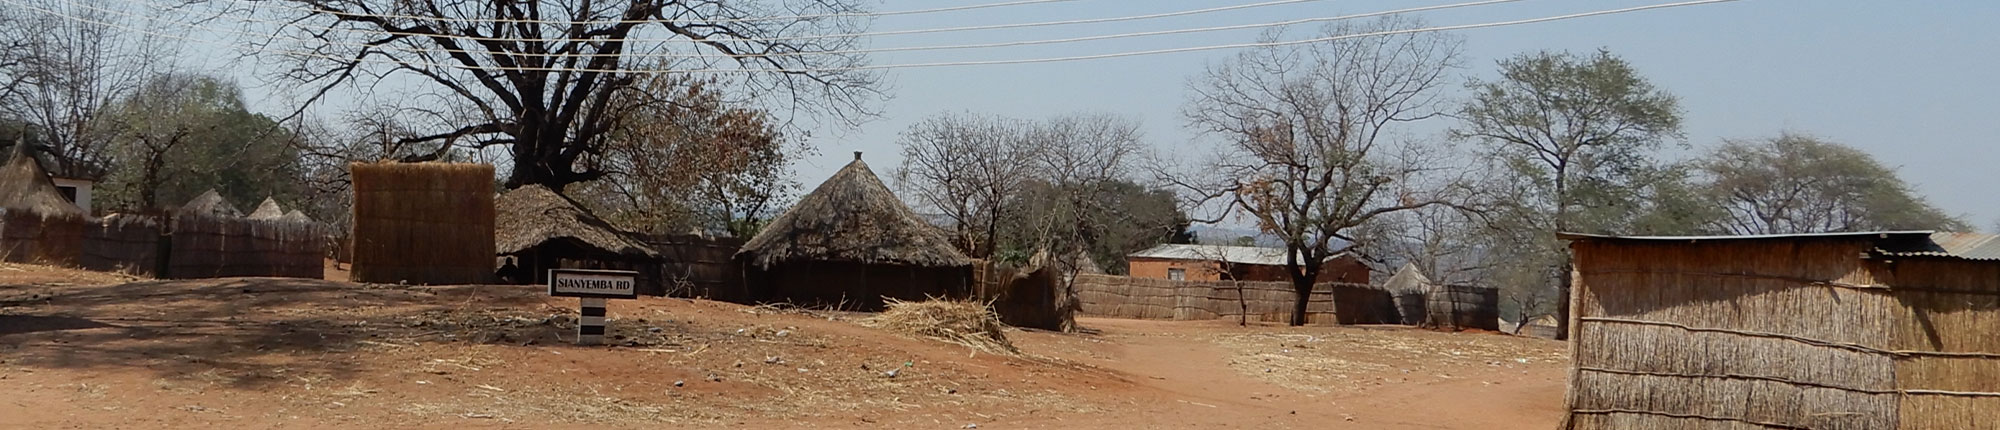 Maissaat-Projekt Sambia